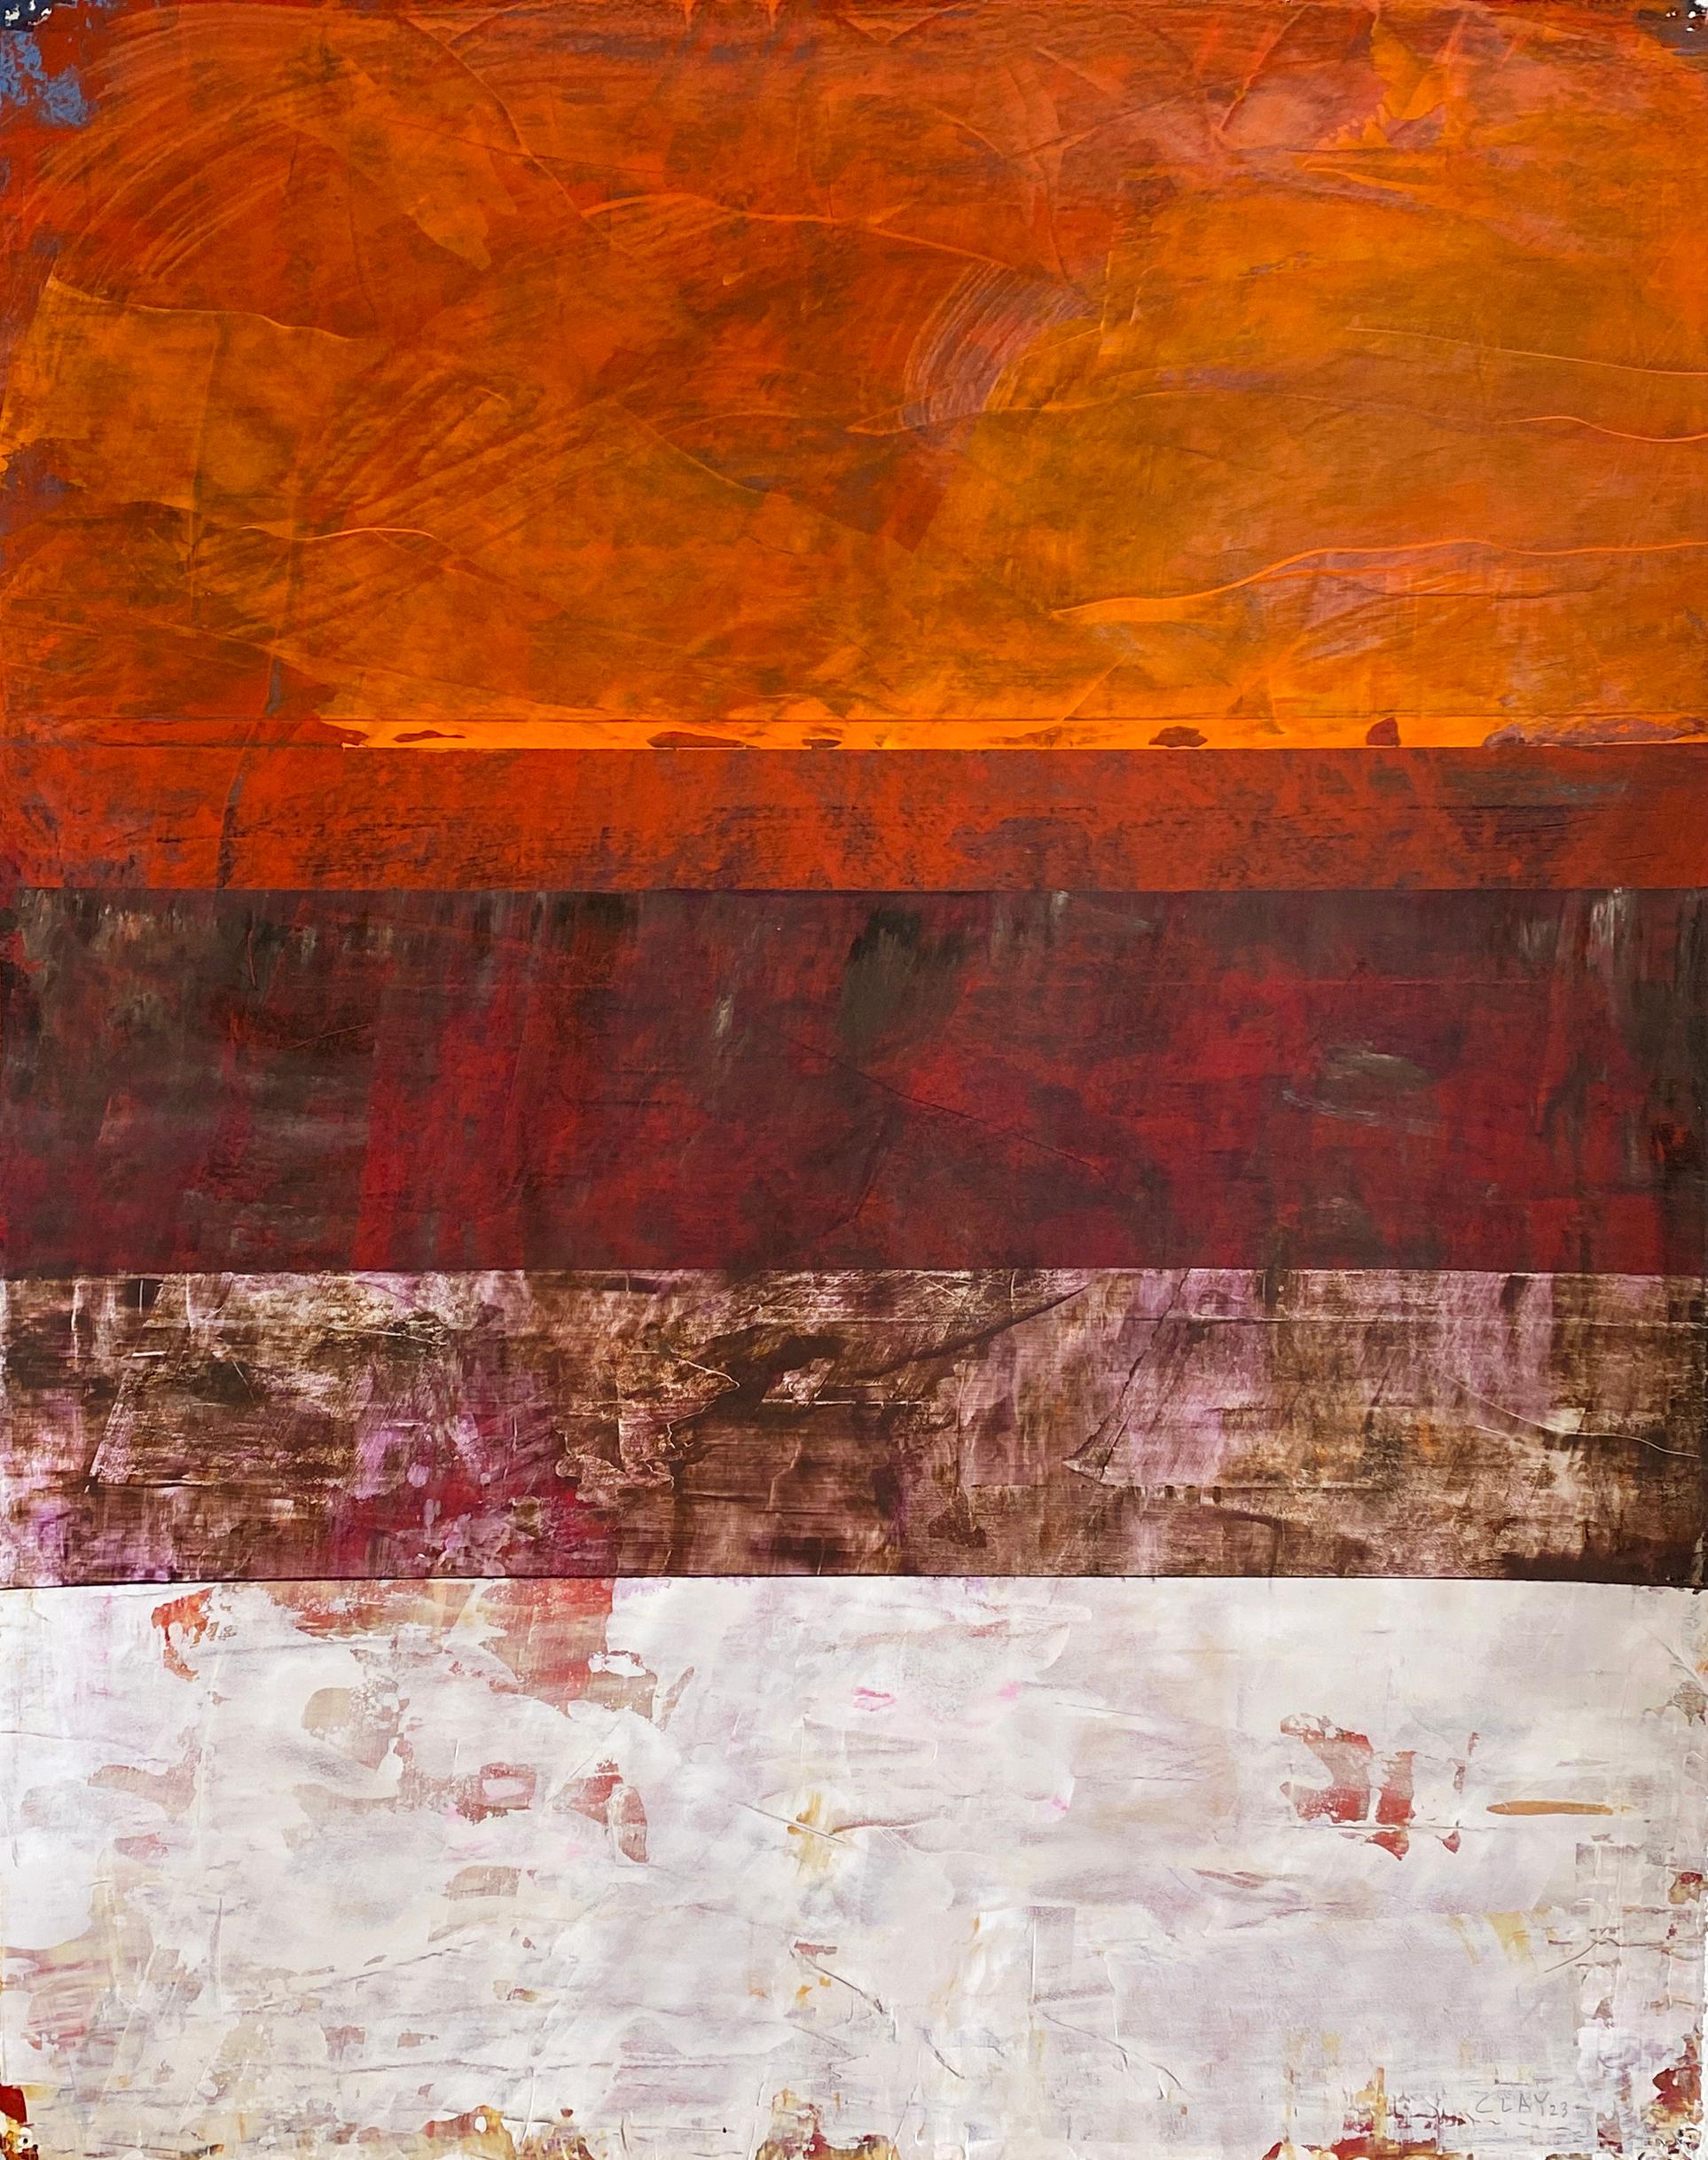 Untitled (#725)' 2023 par l'artiste américain Clay Johnson. Acrylique sur papier Arches, 20 x 16 in. Cette peinture abstraite colorée présente des bandes de couleurs orange, rouge, rose, blanc et noir. 

Motivé par le processus plutôt que par la